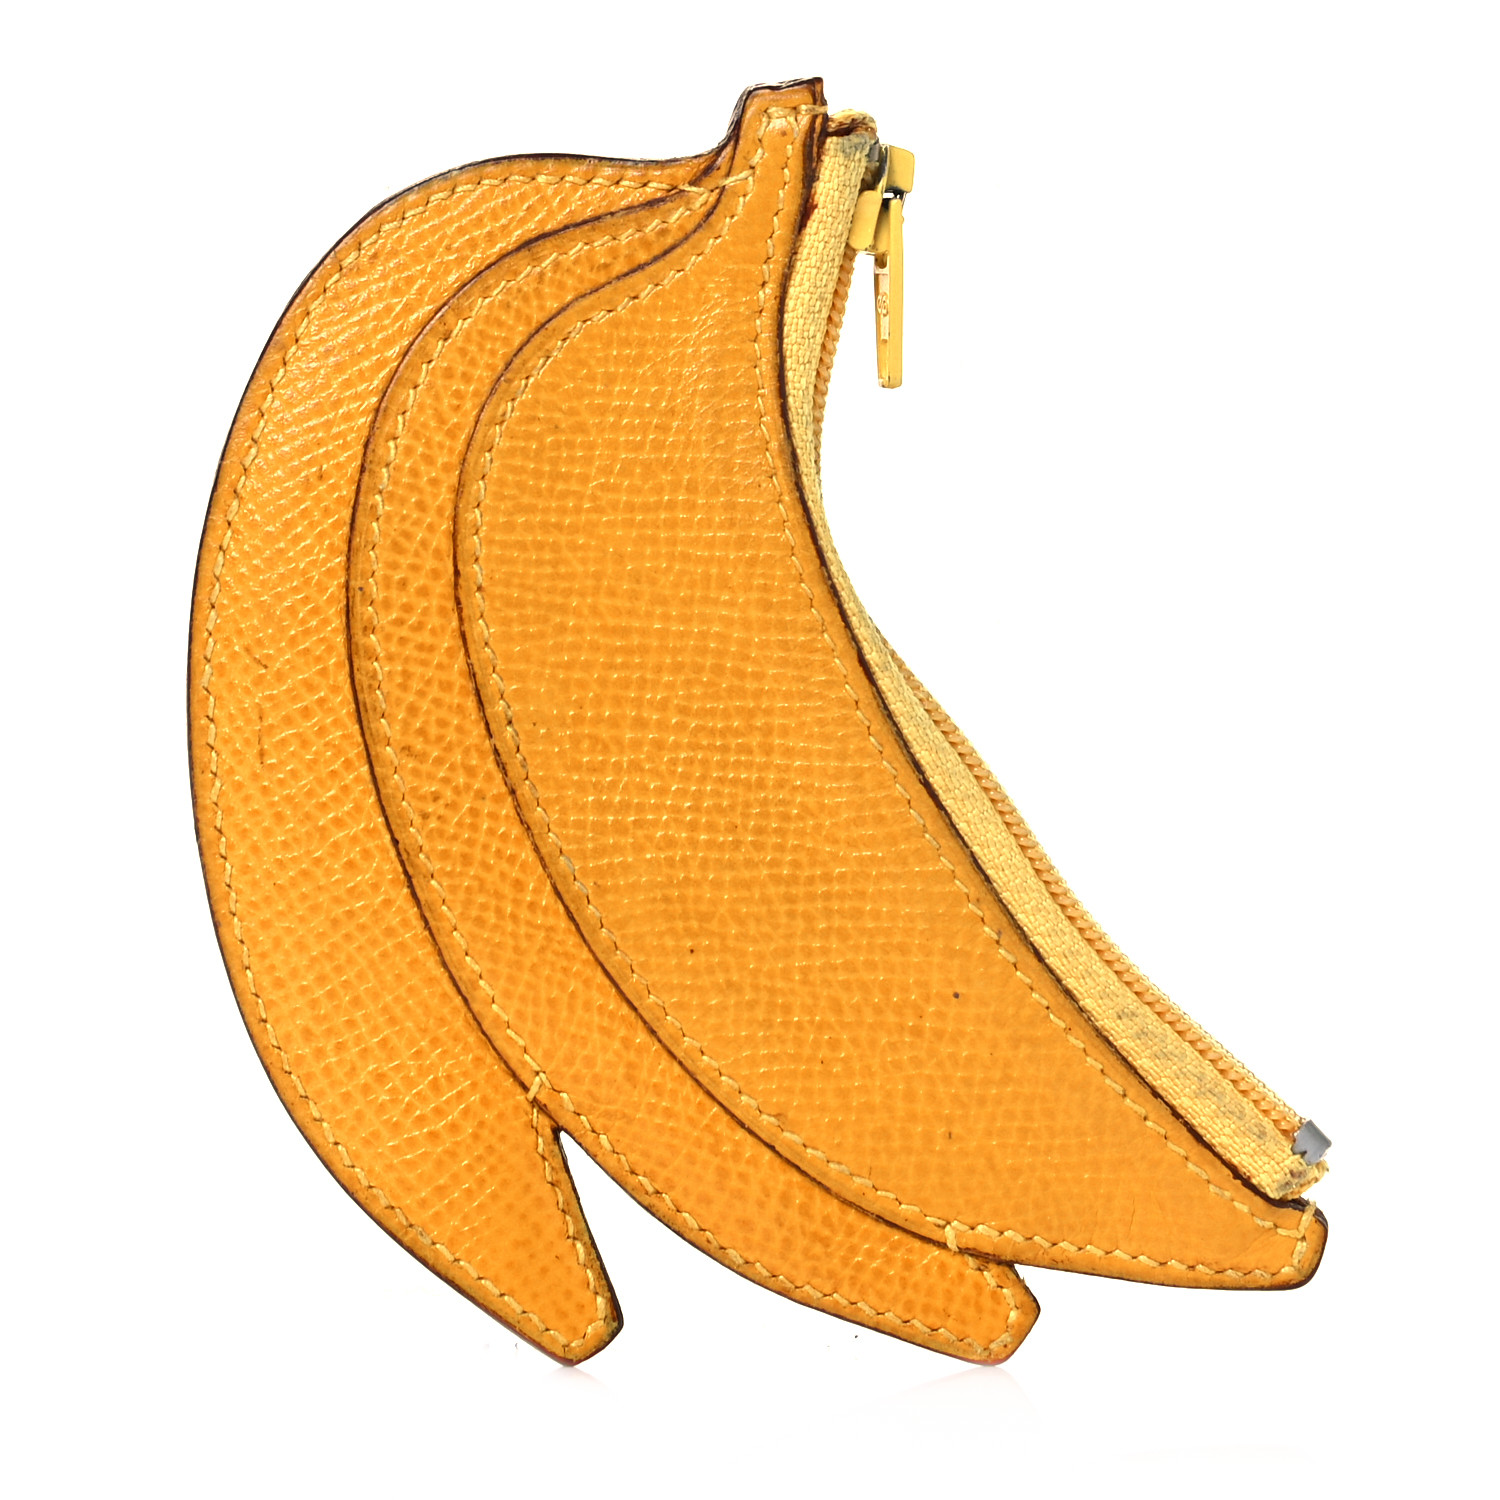 Coin banana ApeSwap（BANANA）価格・チャート・時価総額